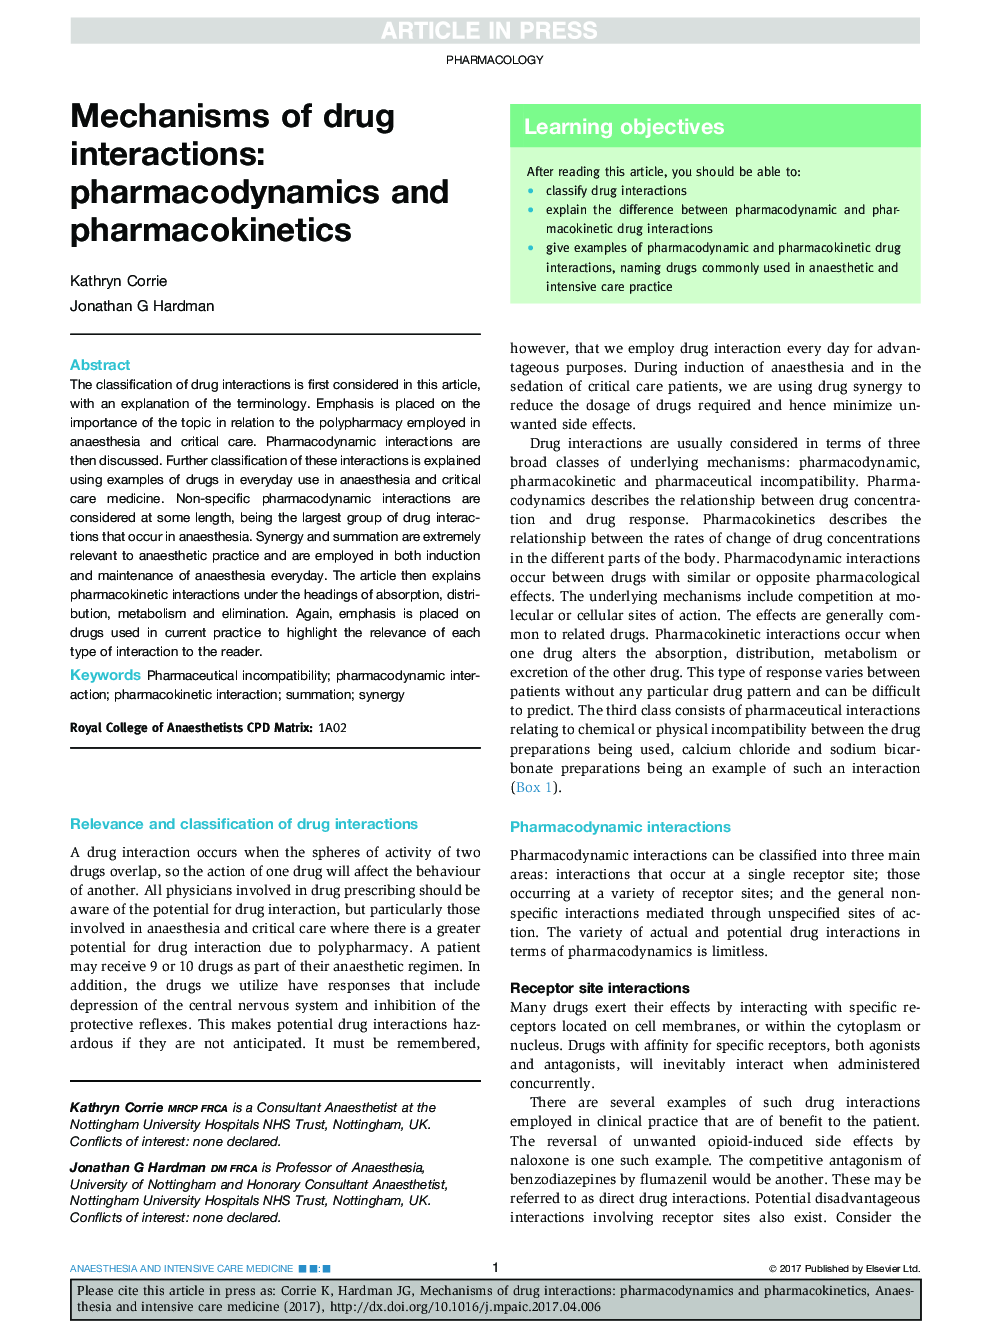 مکانیسم های تعاملات دارویی: فارماکودینامیک و فارماکوکینتیک 